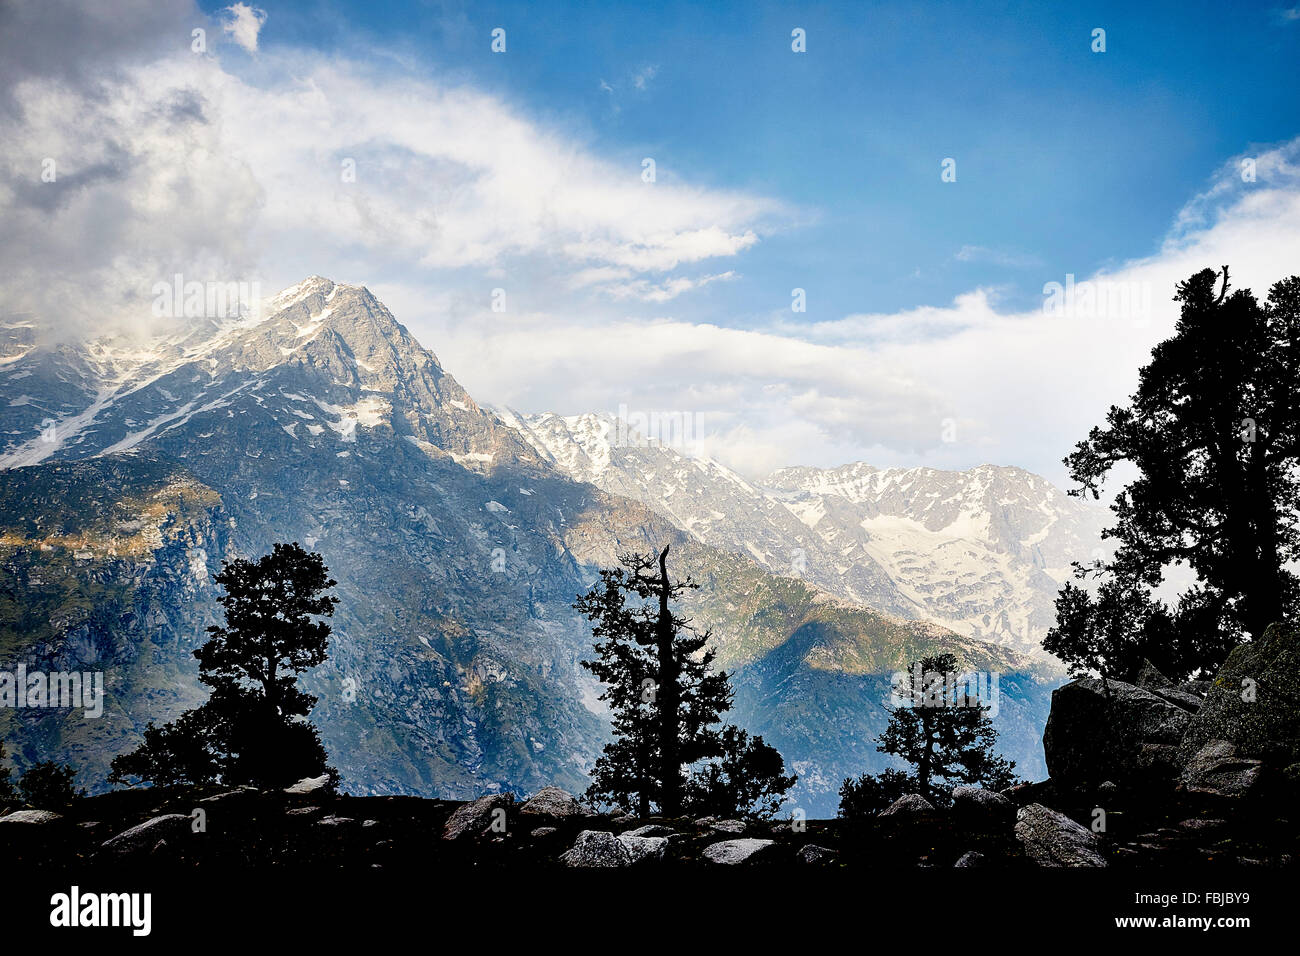 im indischen Himalaya, Indrahar Pass, Schnee Gipfel Dhauladhar, Himachal Pradesh, Indien Stockfoto